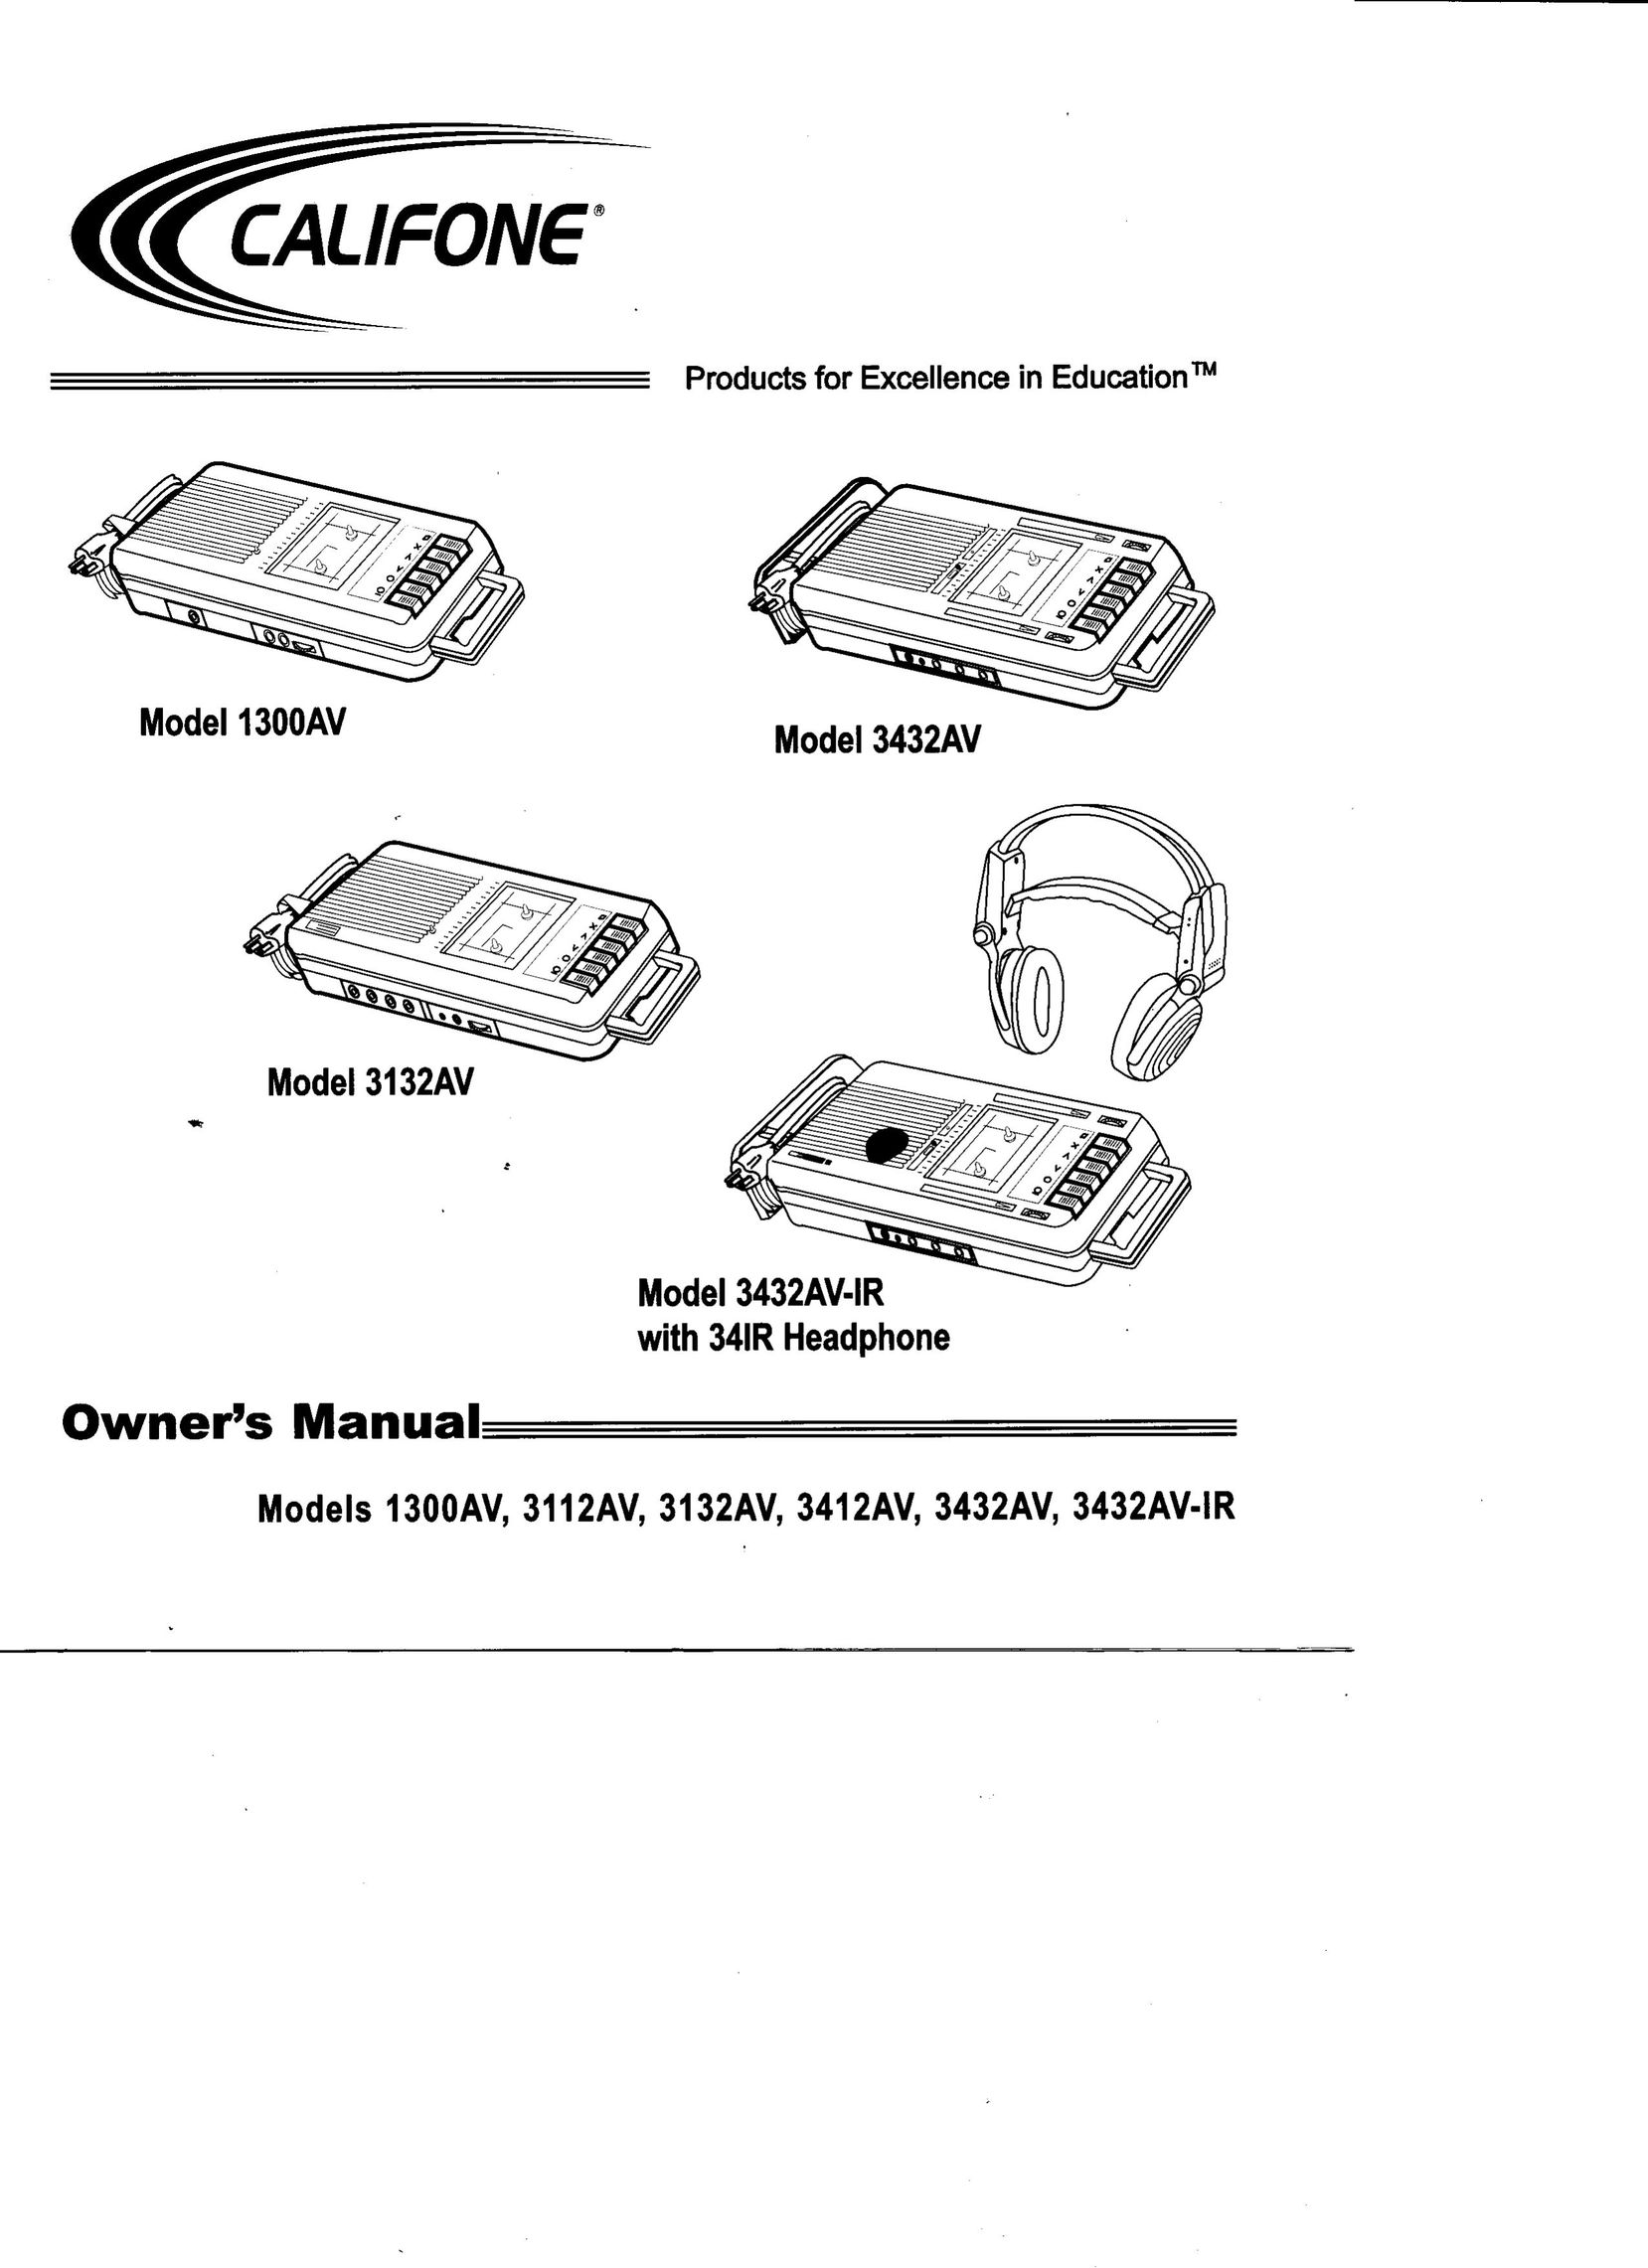 Califone 1300AV Cassette Player User Manual